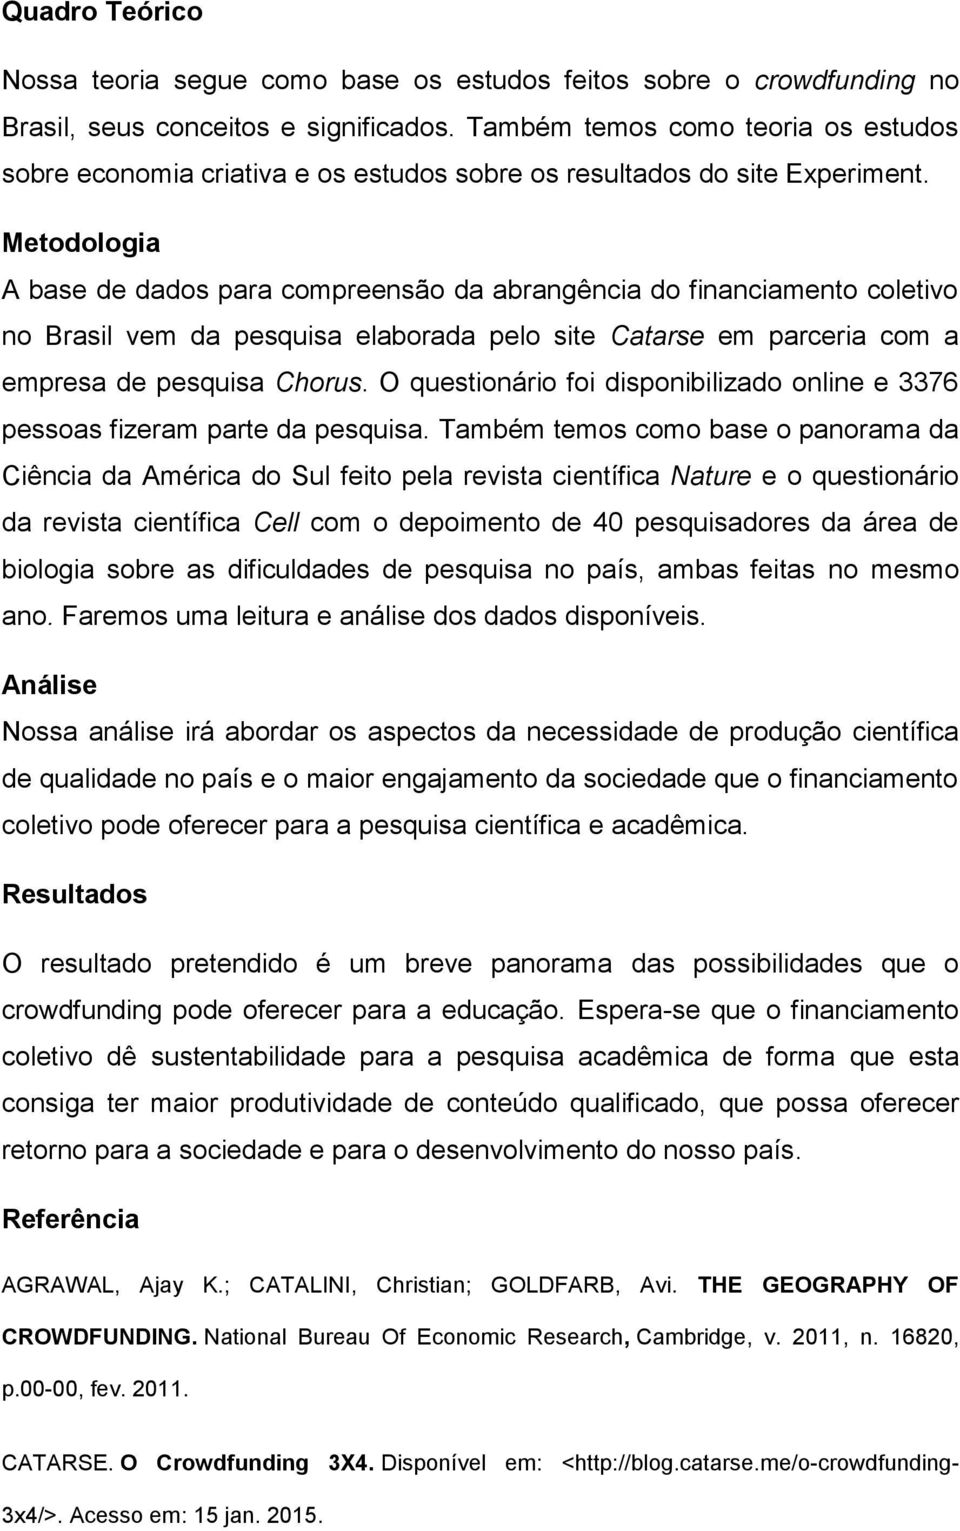 Metodologia A base de dados para compreensão da abrangência do financiamento coletivo no Brasil vem da pesquisa elaborada pelo site Catarse em parceria com a empresa de pesquisa Chorus.